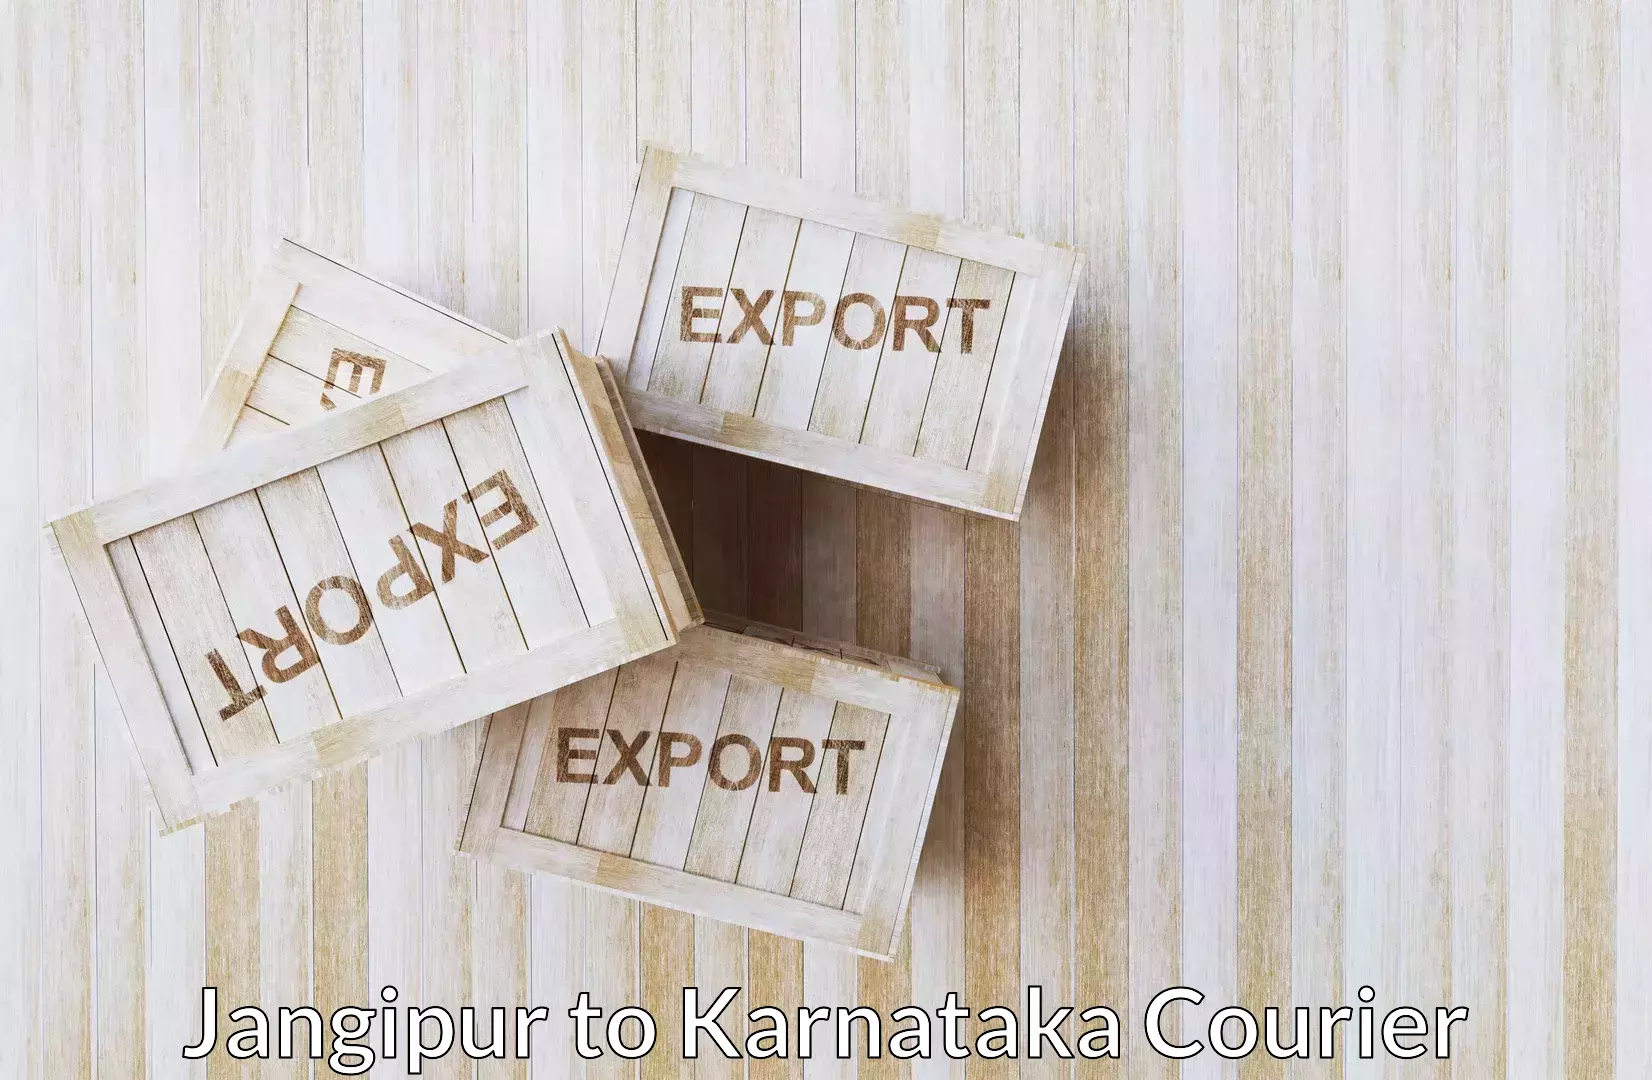 Urgent luggage shipment Jangipur to Gurmatkal